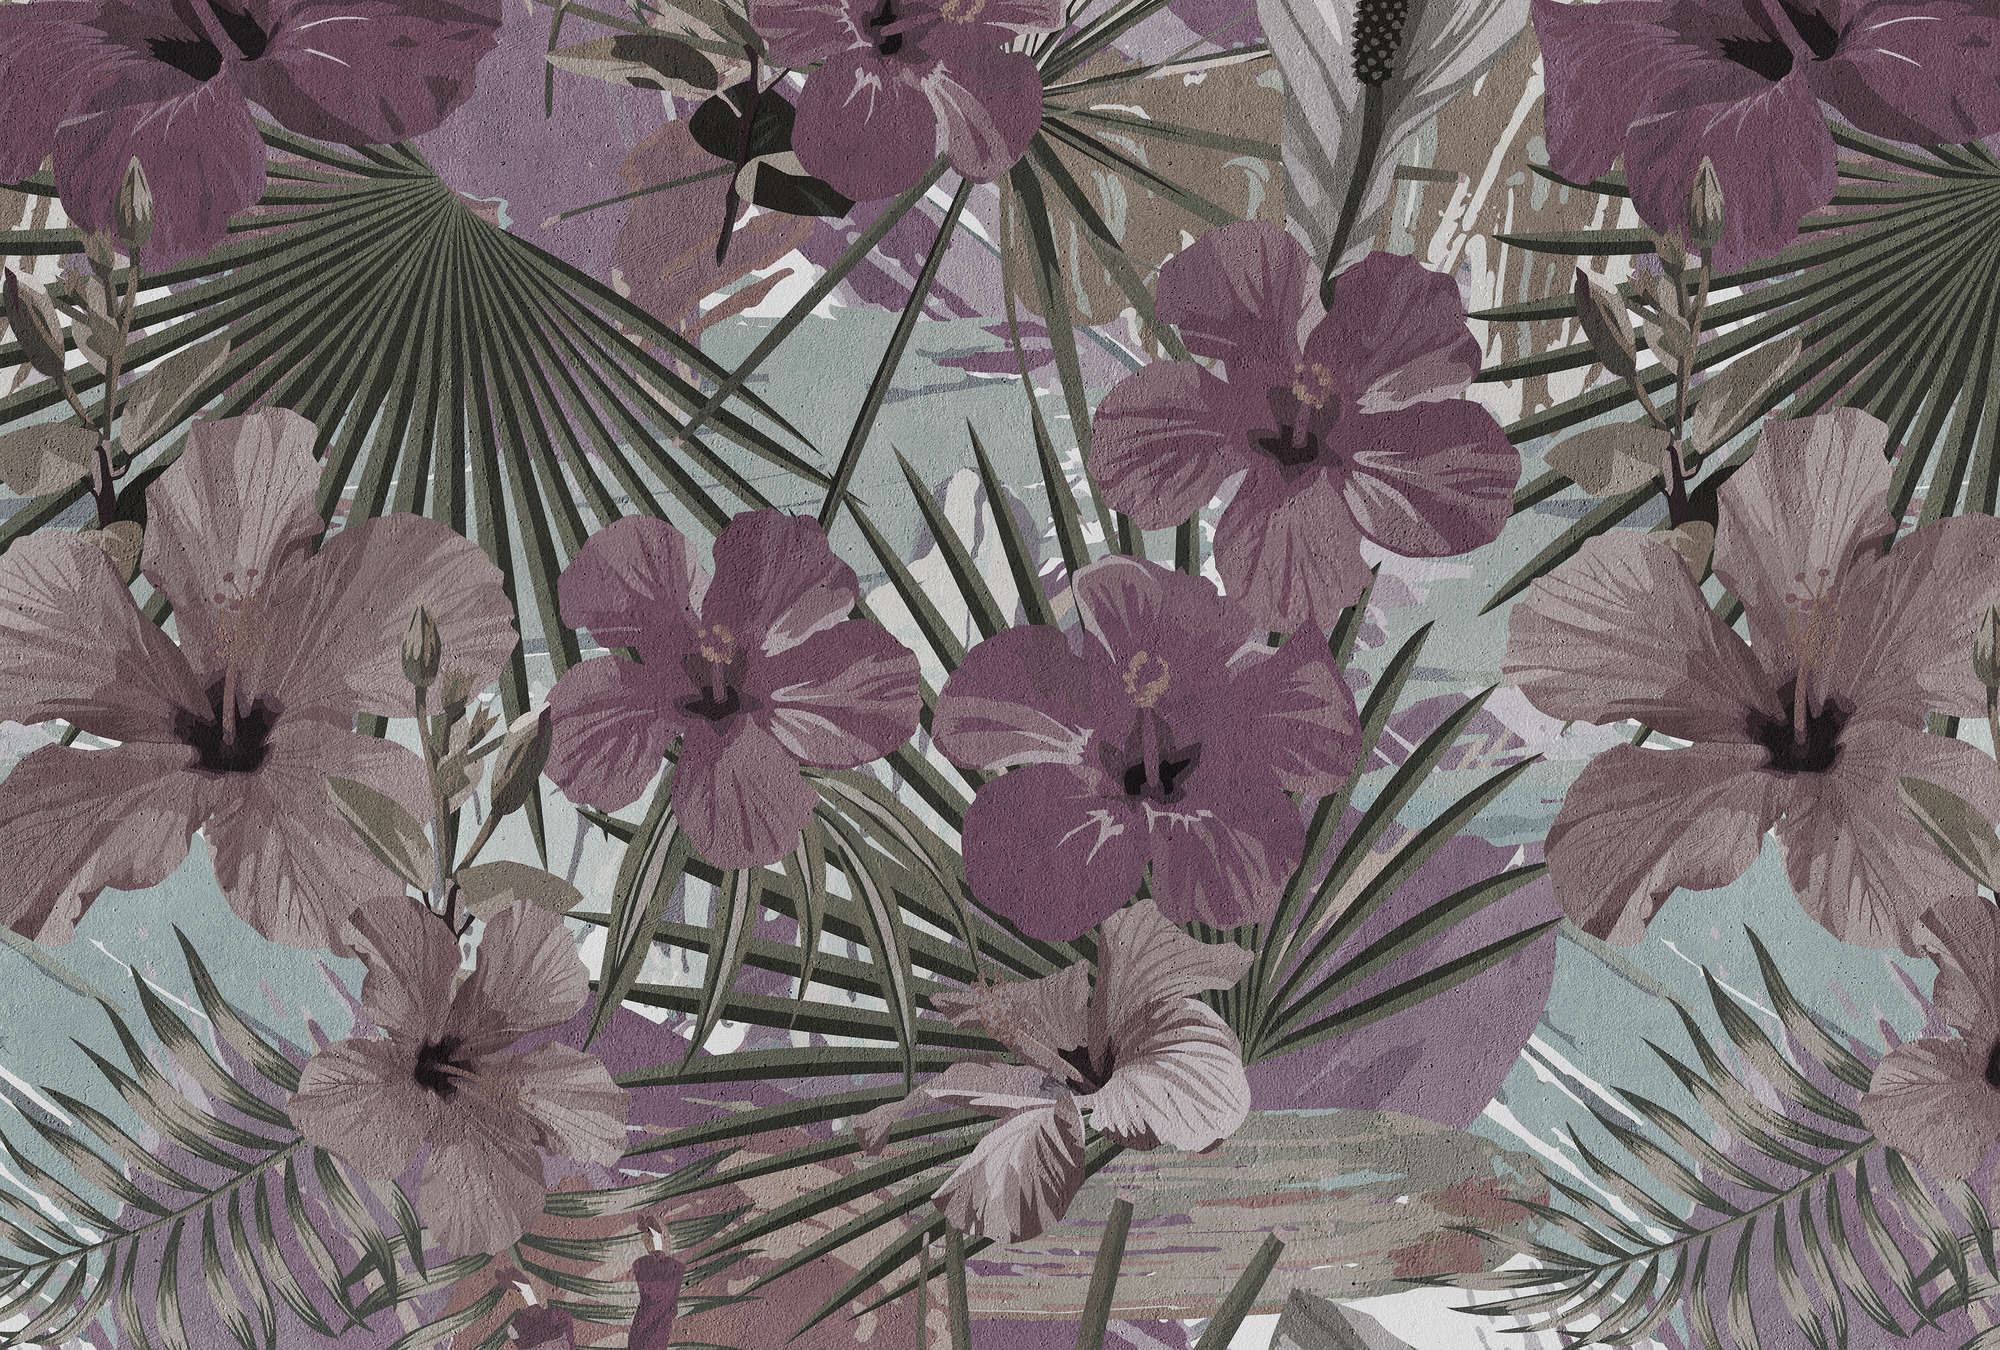             Fototapete Dschungel Palmen und Blume – Lila, Grün
        